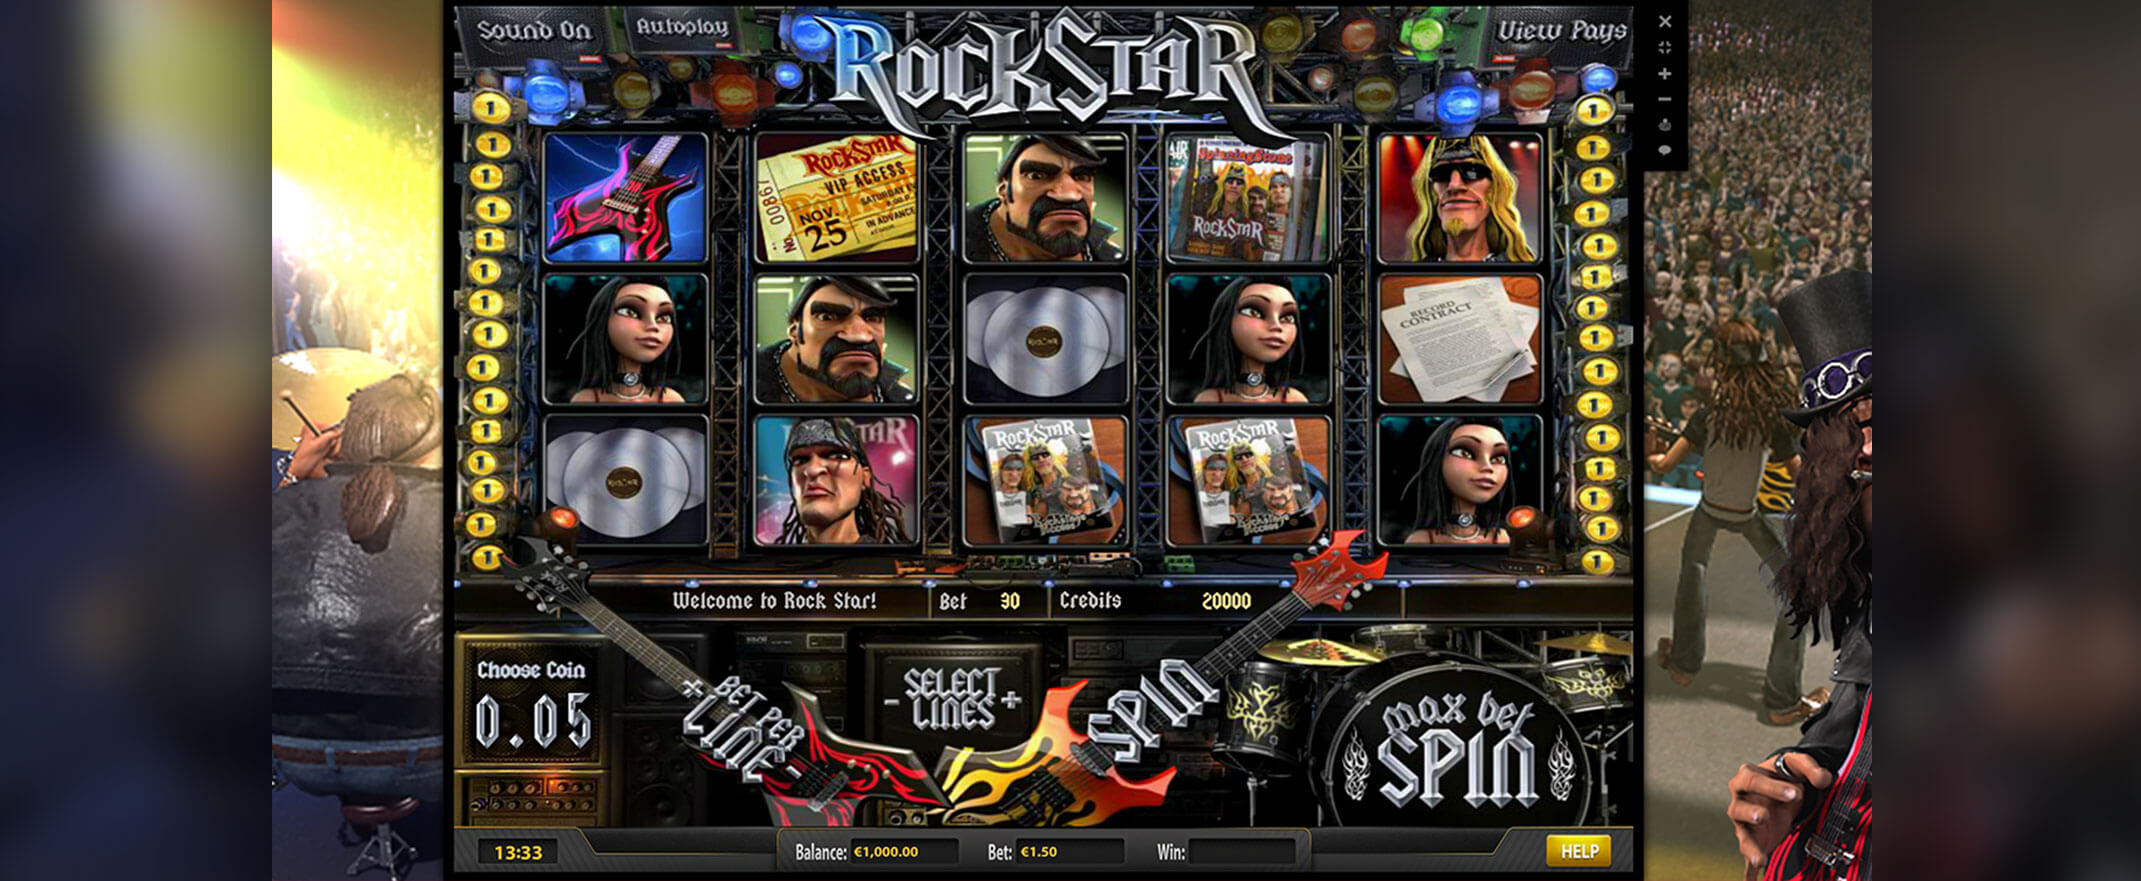 rockstar spilleautomat